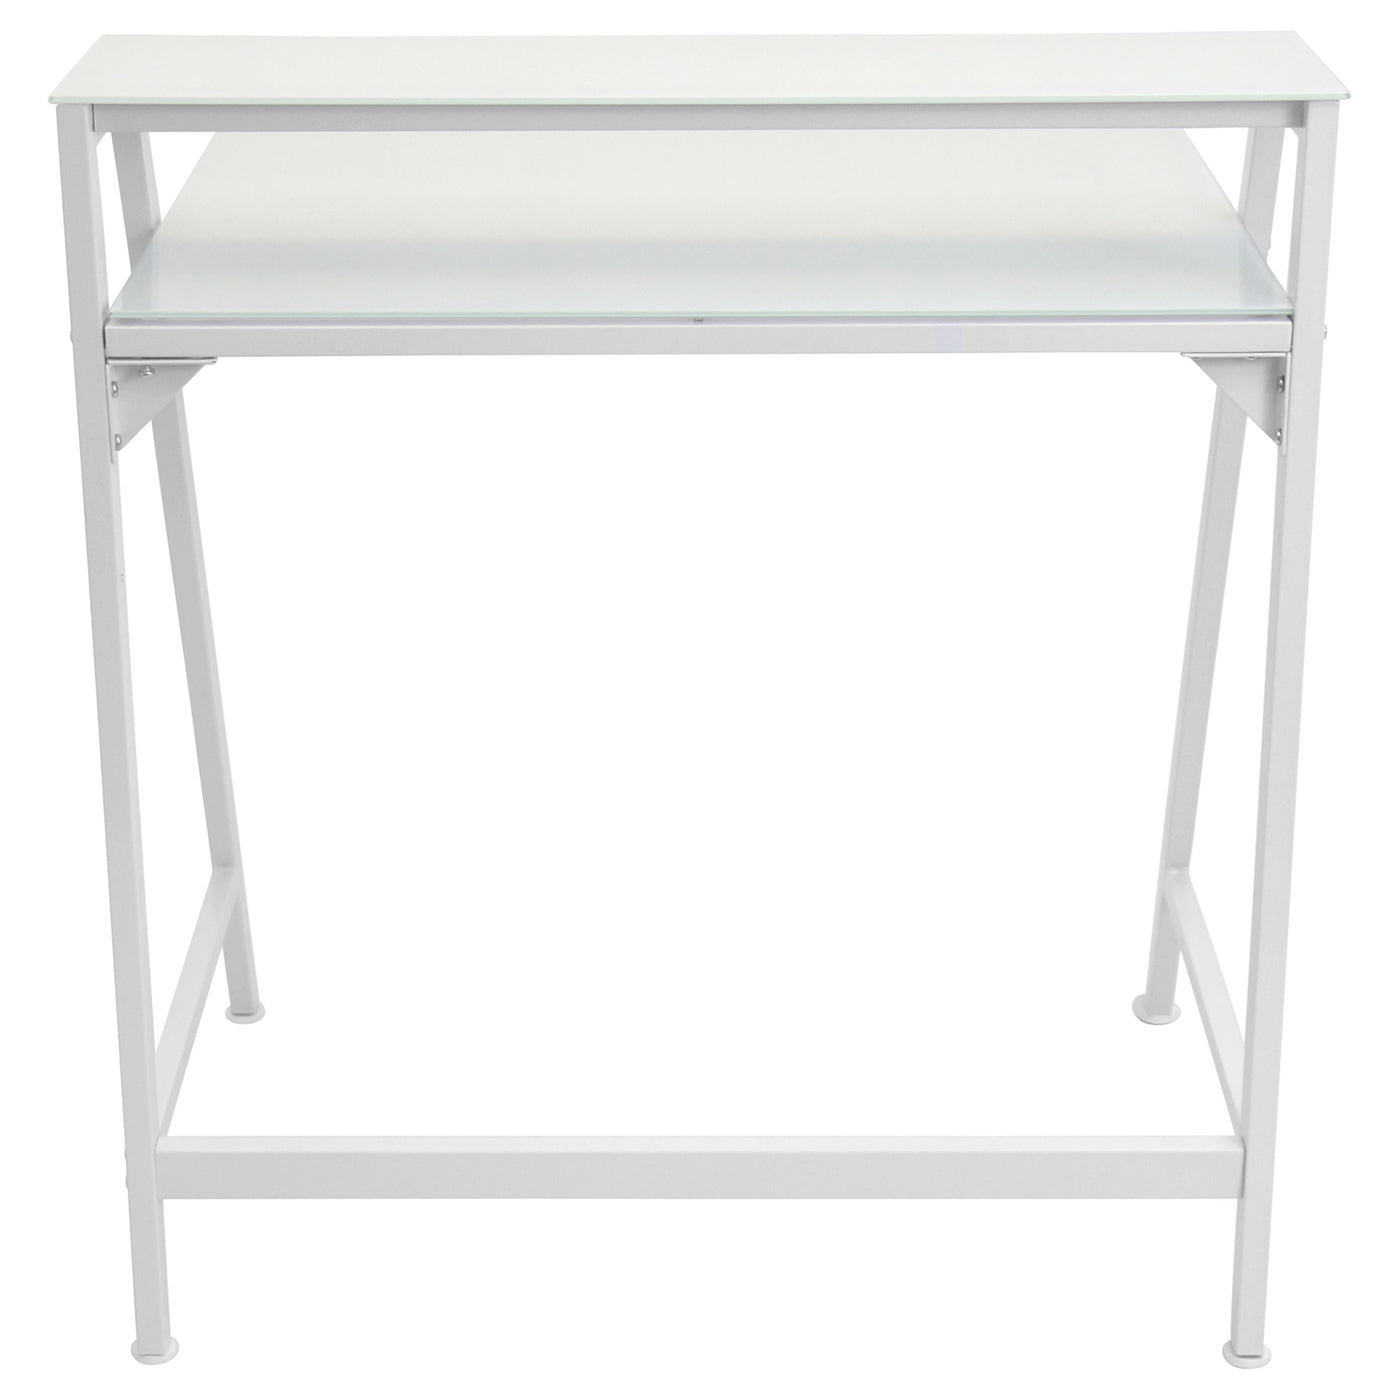 2-tier Contemporary Desk - White